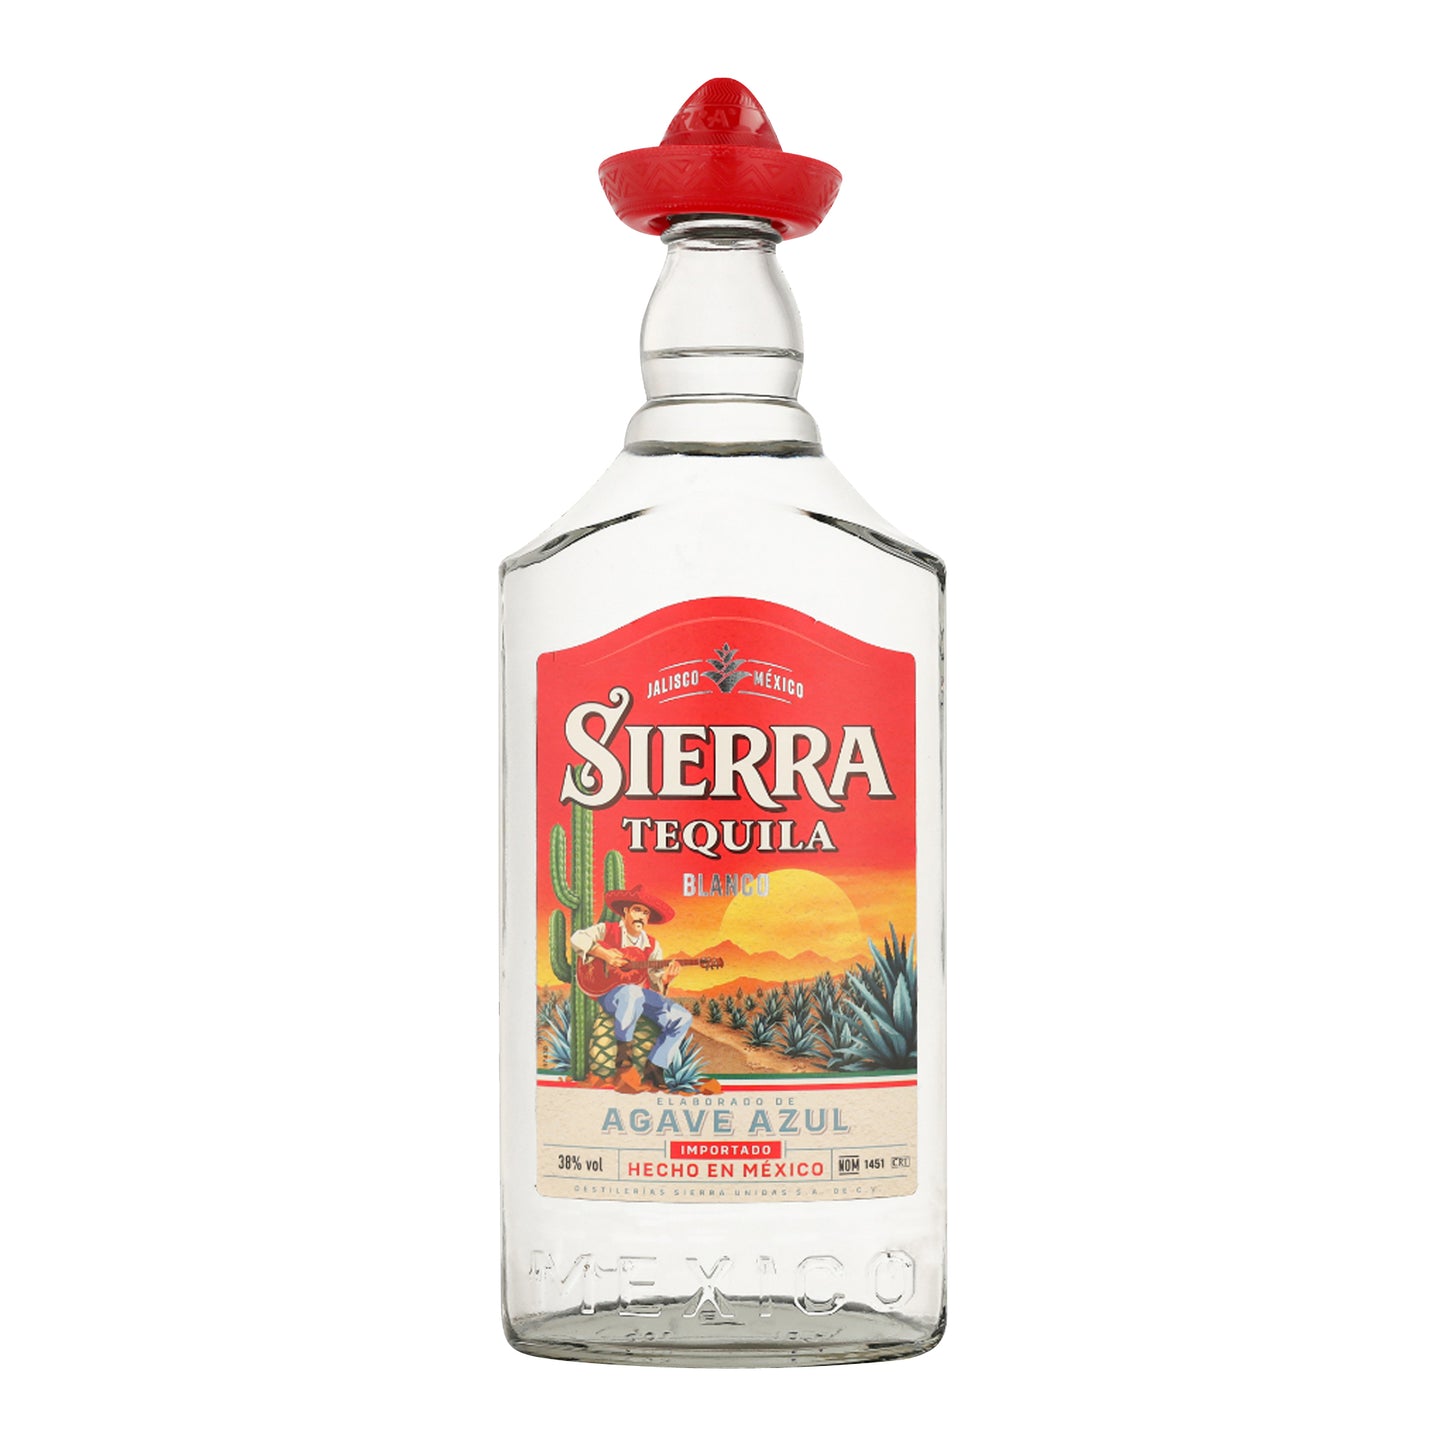 Sierra Silver 38.00% / 1000 / 6